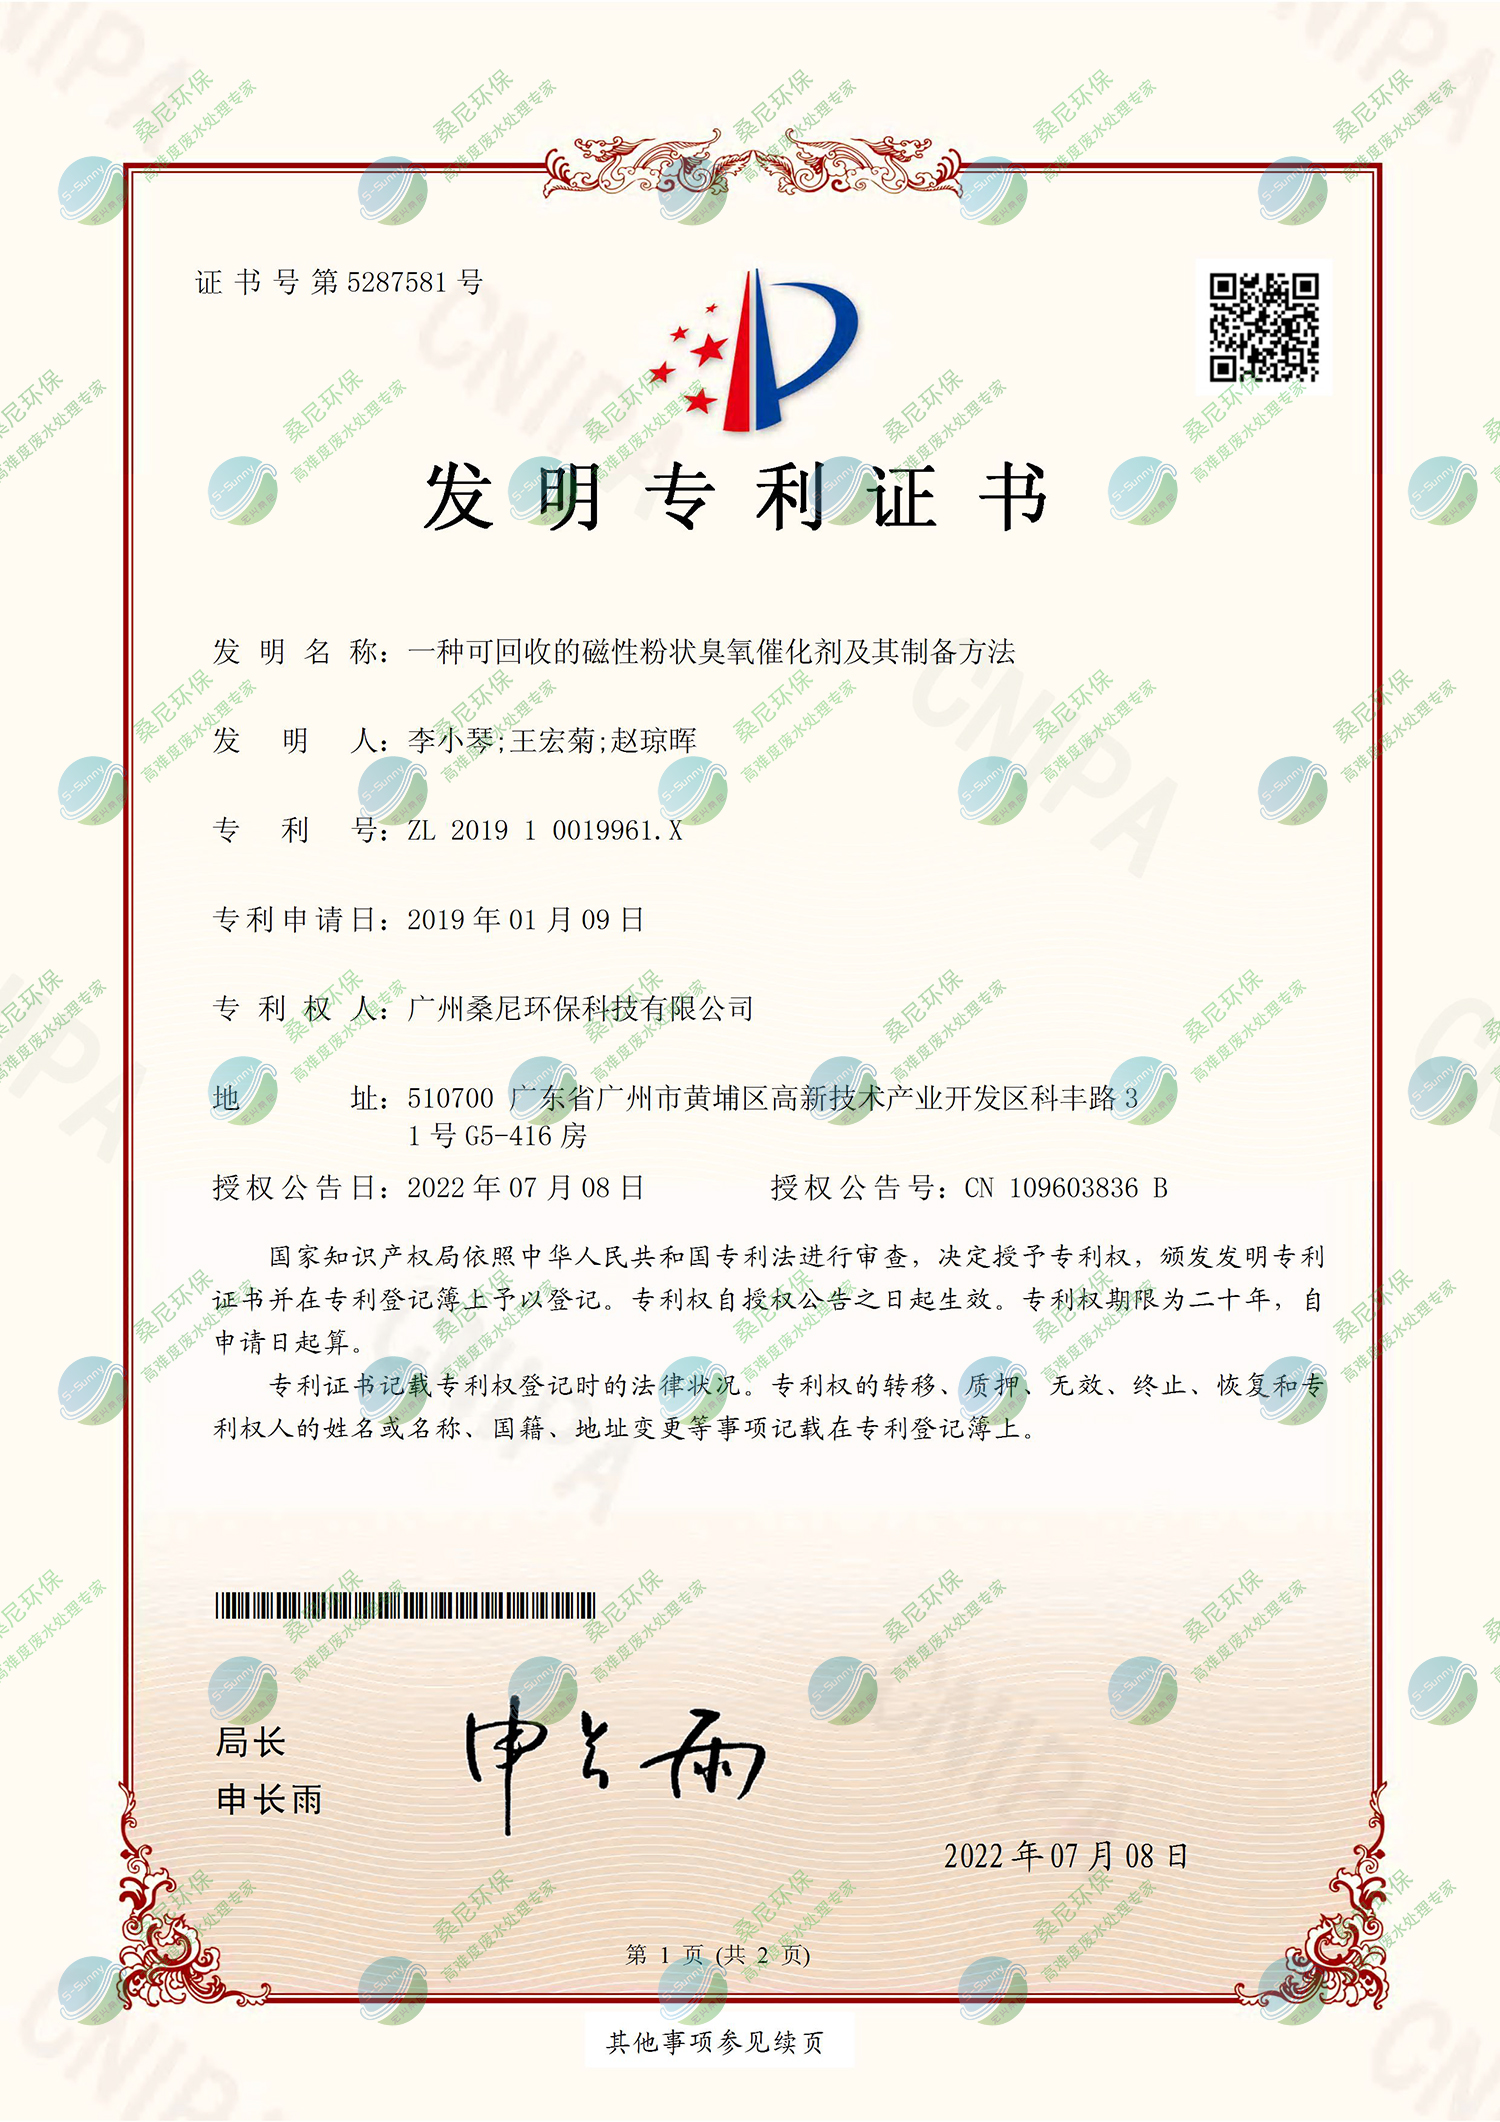 26、201910019961X-一种可回收的磁性粉状臭氧催化剂及其制备方法-广州桑尼环保科技有限公司-证书-1.jpg